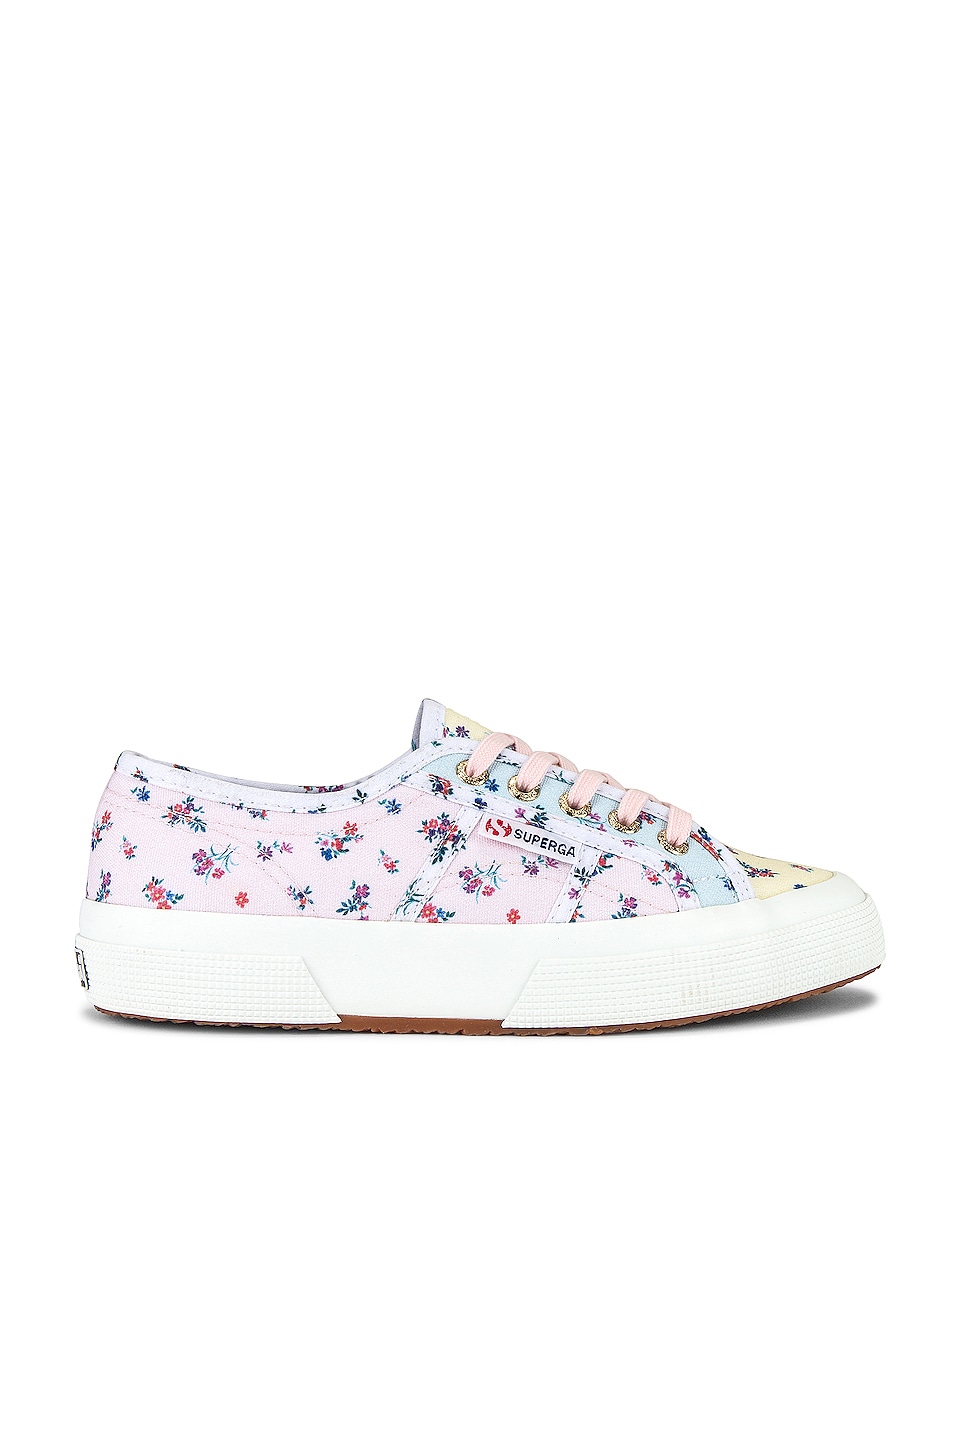 Superga 2750 Floral Sneaker in Pink Floral Mix | REVOLVE